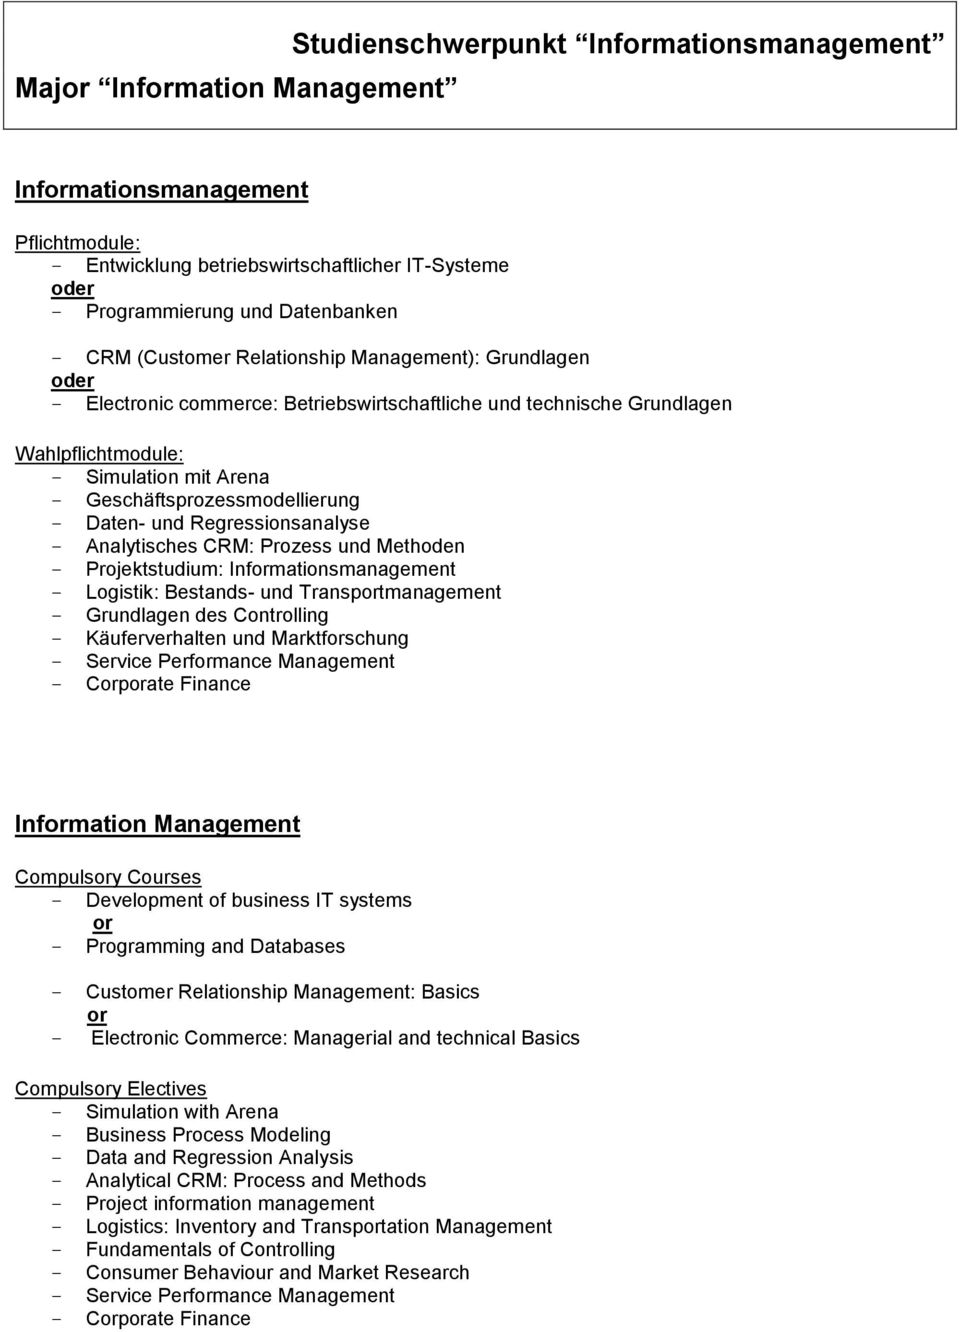 Geschäftsprozessmodellierung - Daten- und Regressionsanalyse - Analytisches CRM: Prozess und Methoden - Projektstudium: Informationsmanagement - Logistik: Bestands- und Transportmanagement -